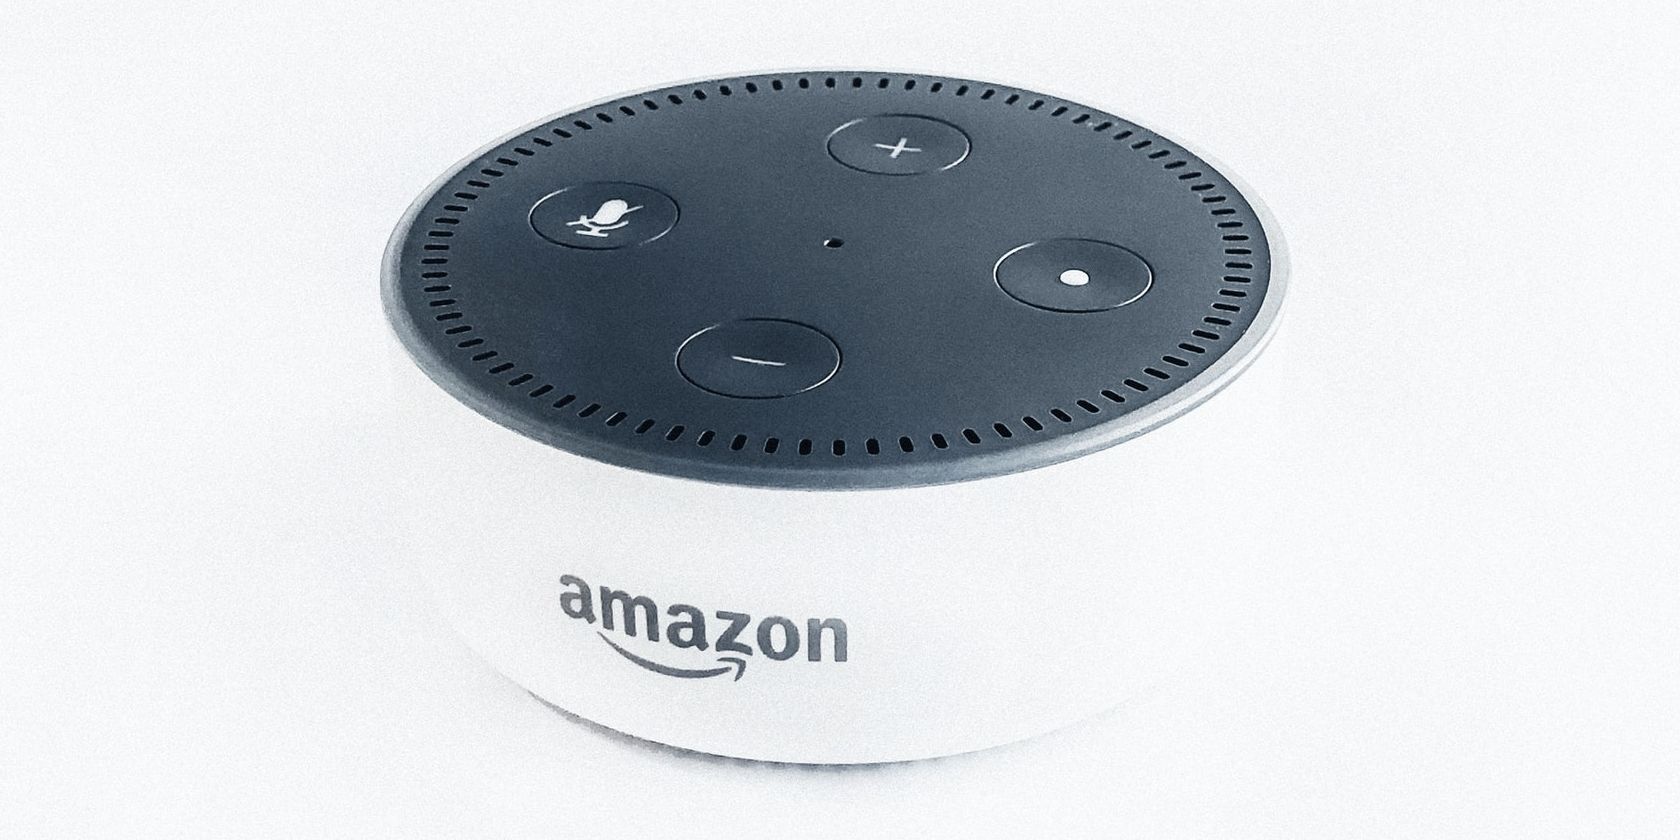 White Alexa device with Amazon logo.